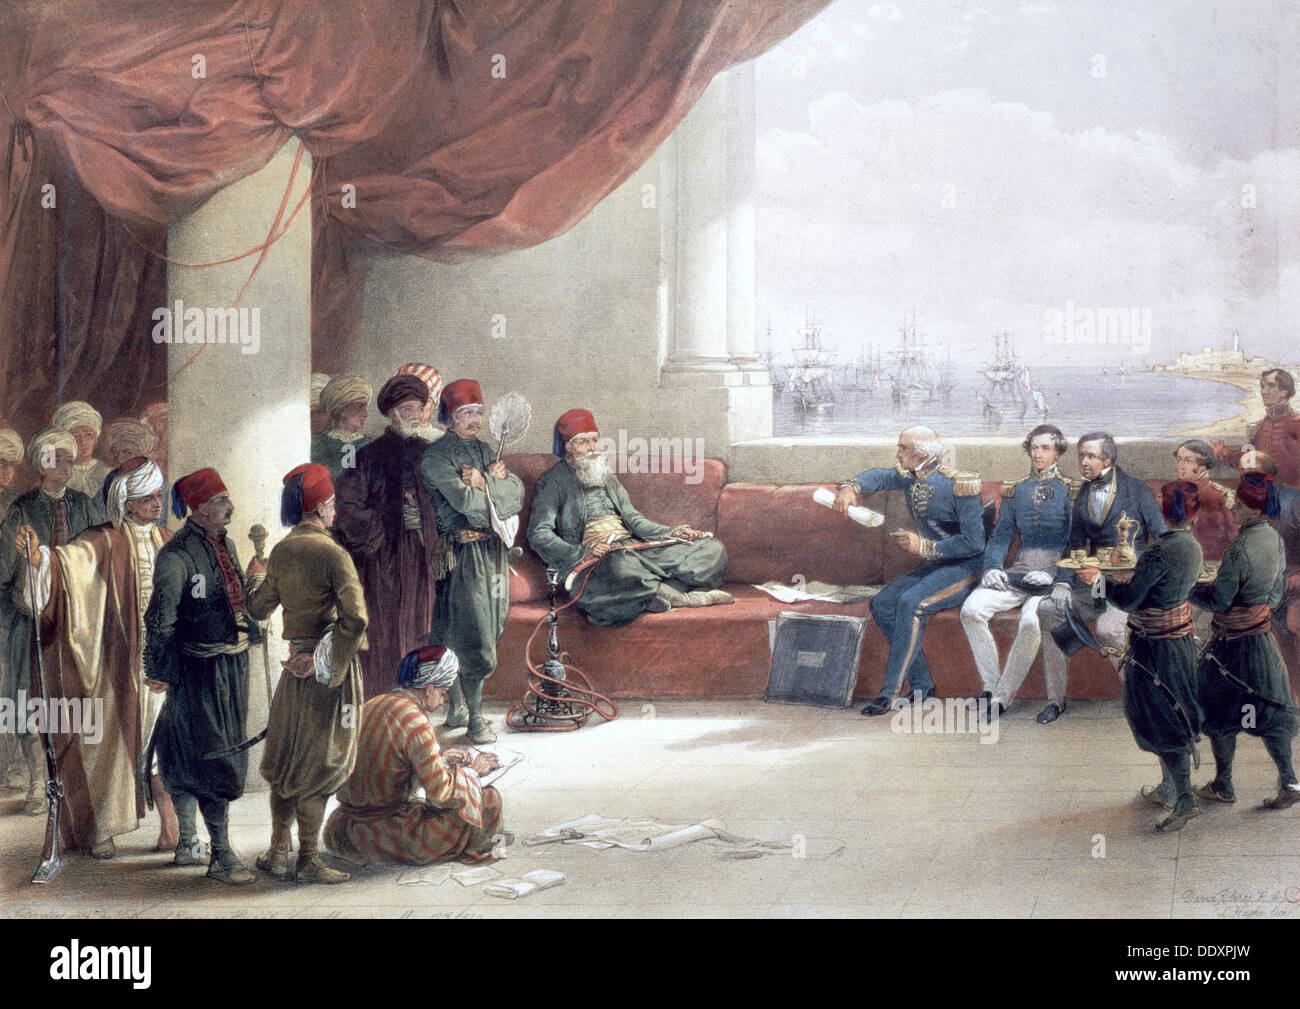 Intervista con il viceré d'Egitto presso il suo palazzo, Alessandria, Egitto, 12 maggio 1839, (xix secolo). Artista: David Roberts Foto Stock